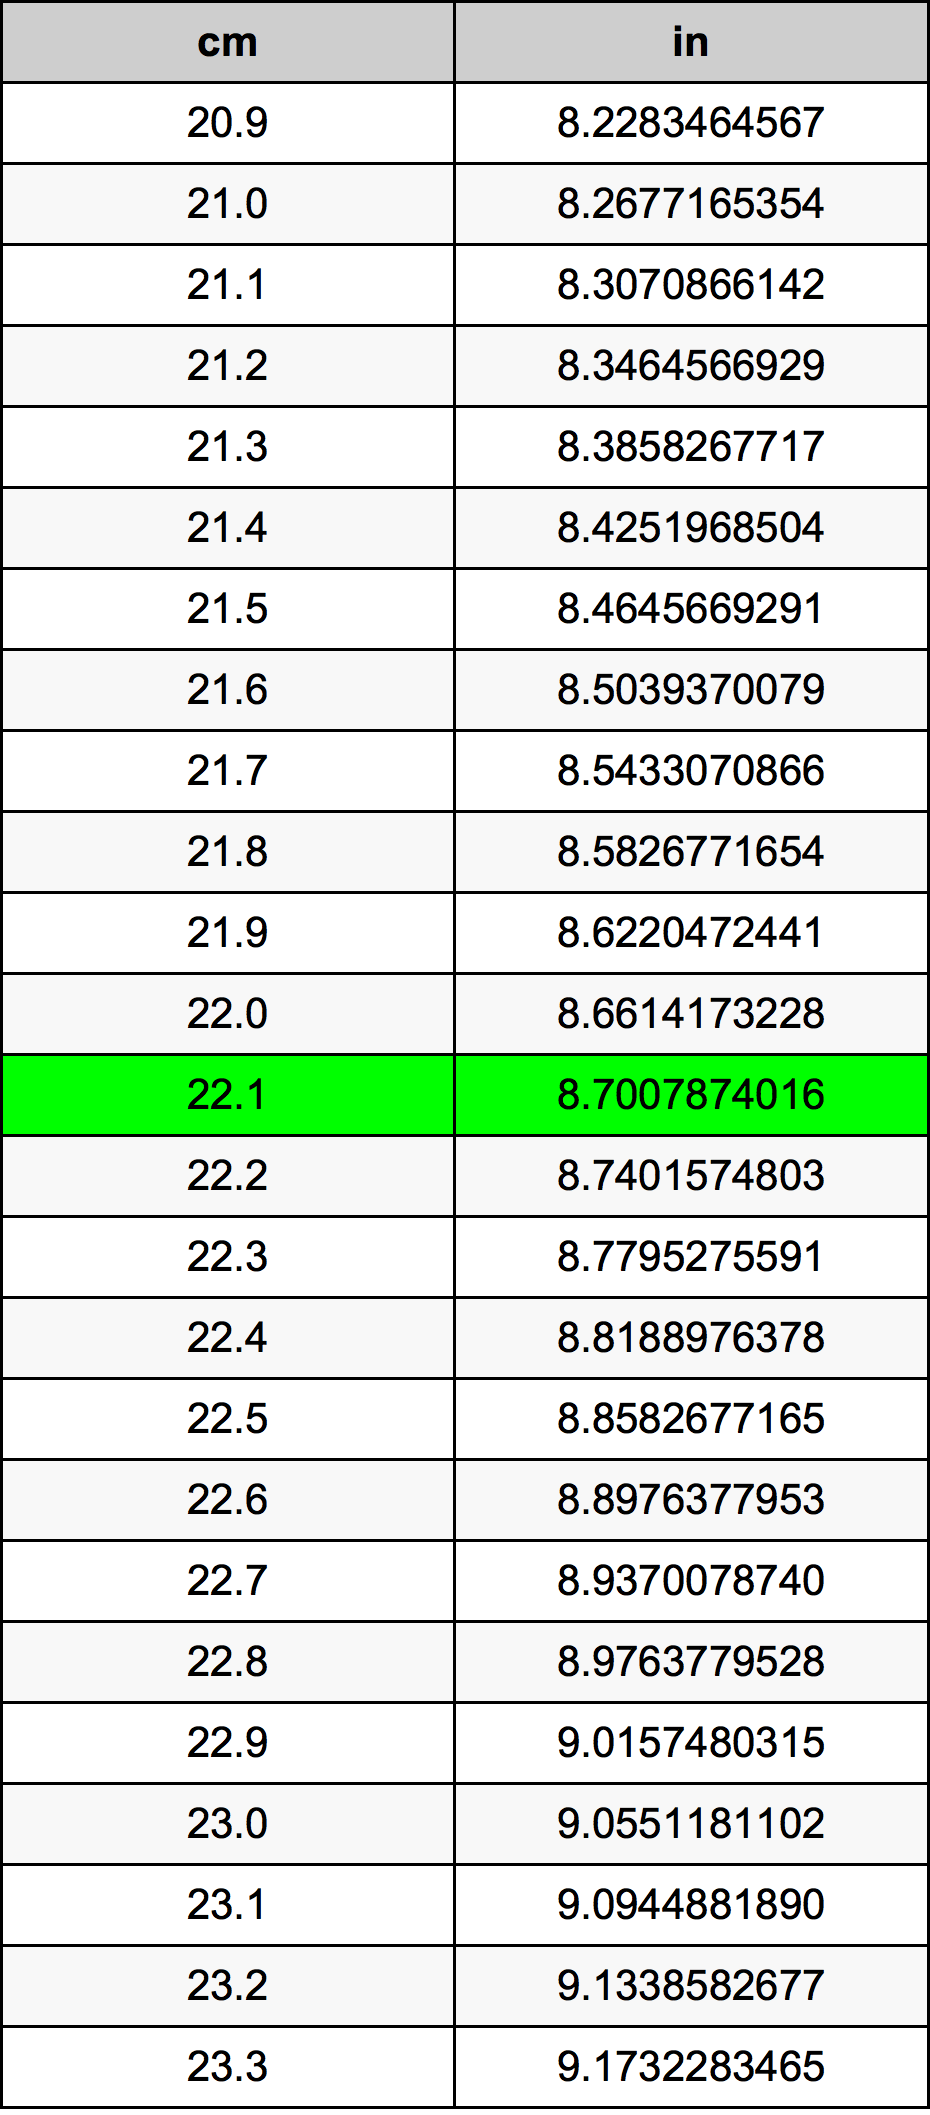 22.1 Centiméter átszámítási táblázat